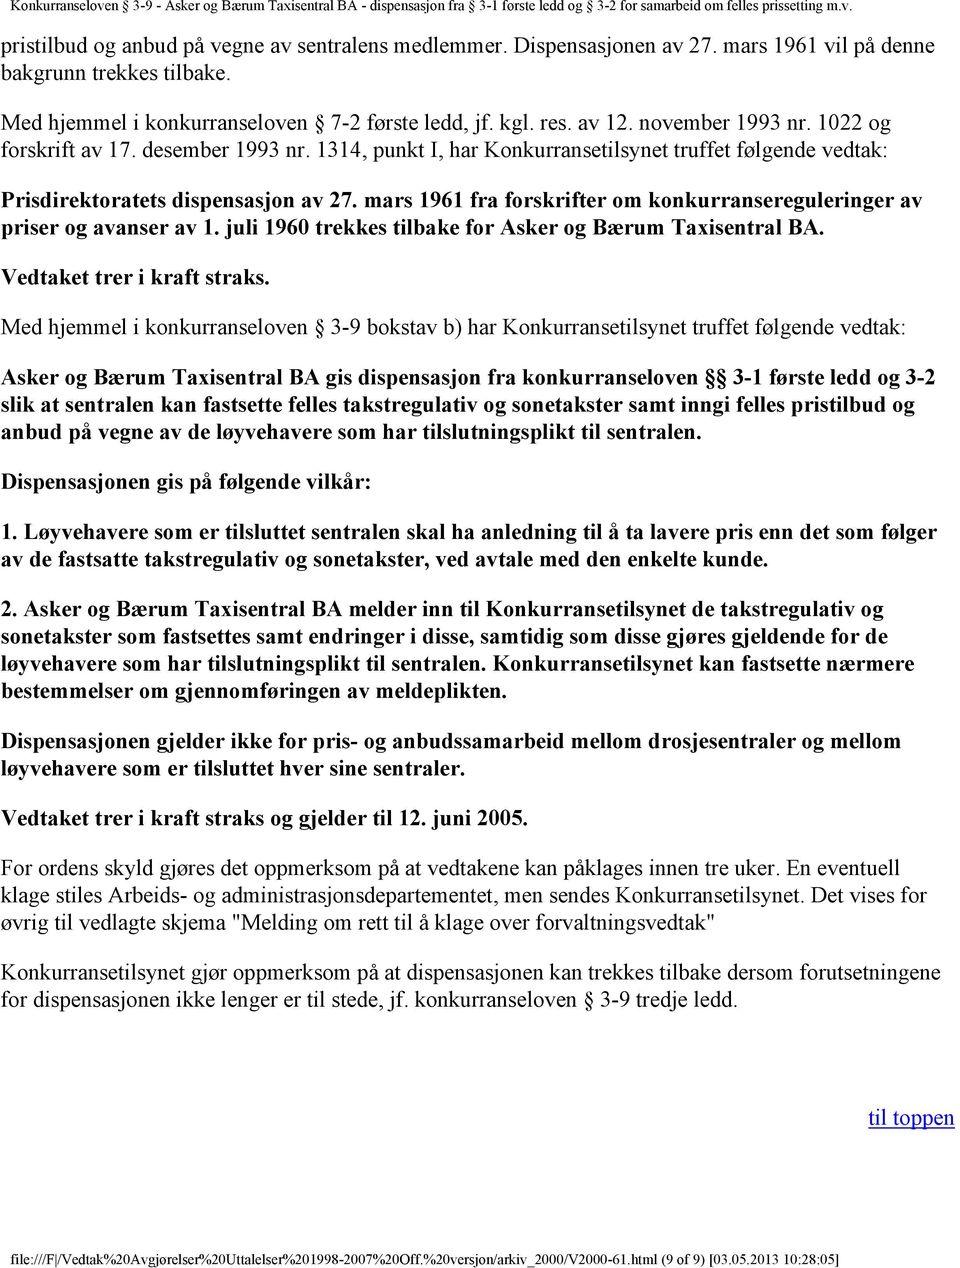 mars 1961 fra forskrifter om konkurransereguleringer av priser og avanser av 1. juli 1960 trekkes tilbake for Asker og Bærum Taxisentral BA. Vedtaket trer i kraft straks.